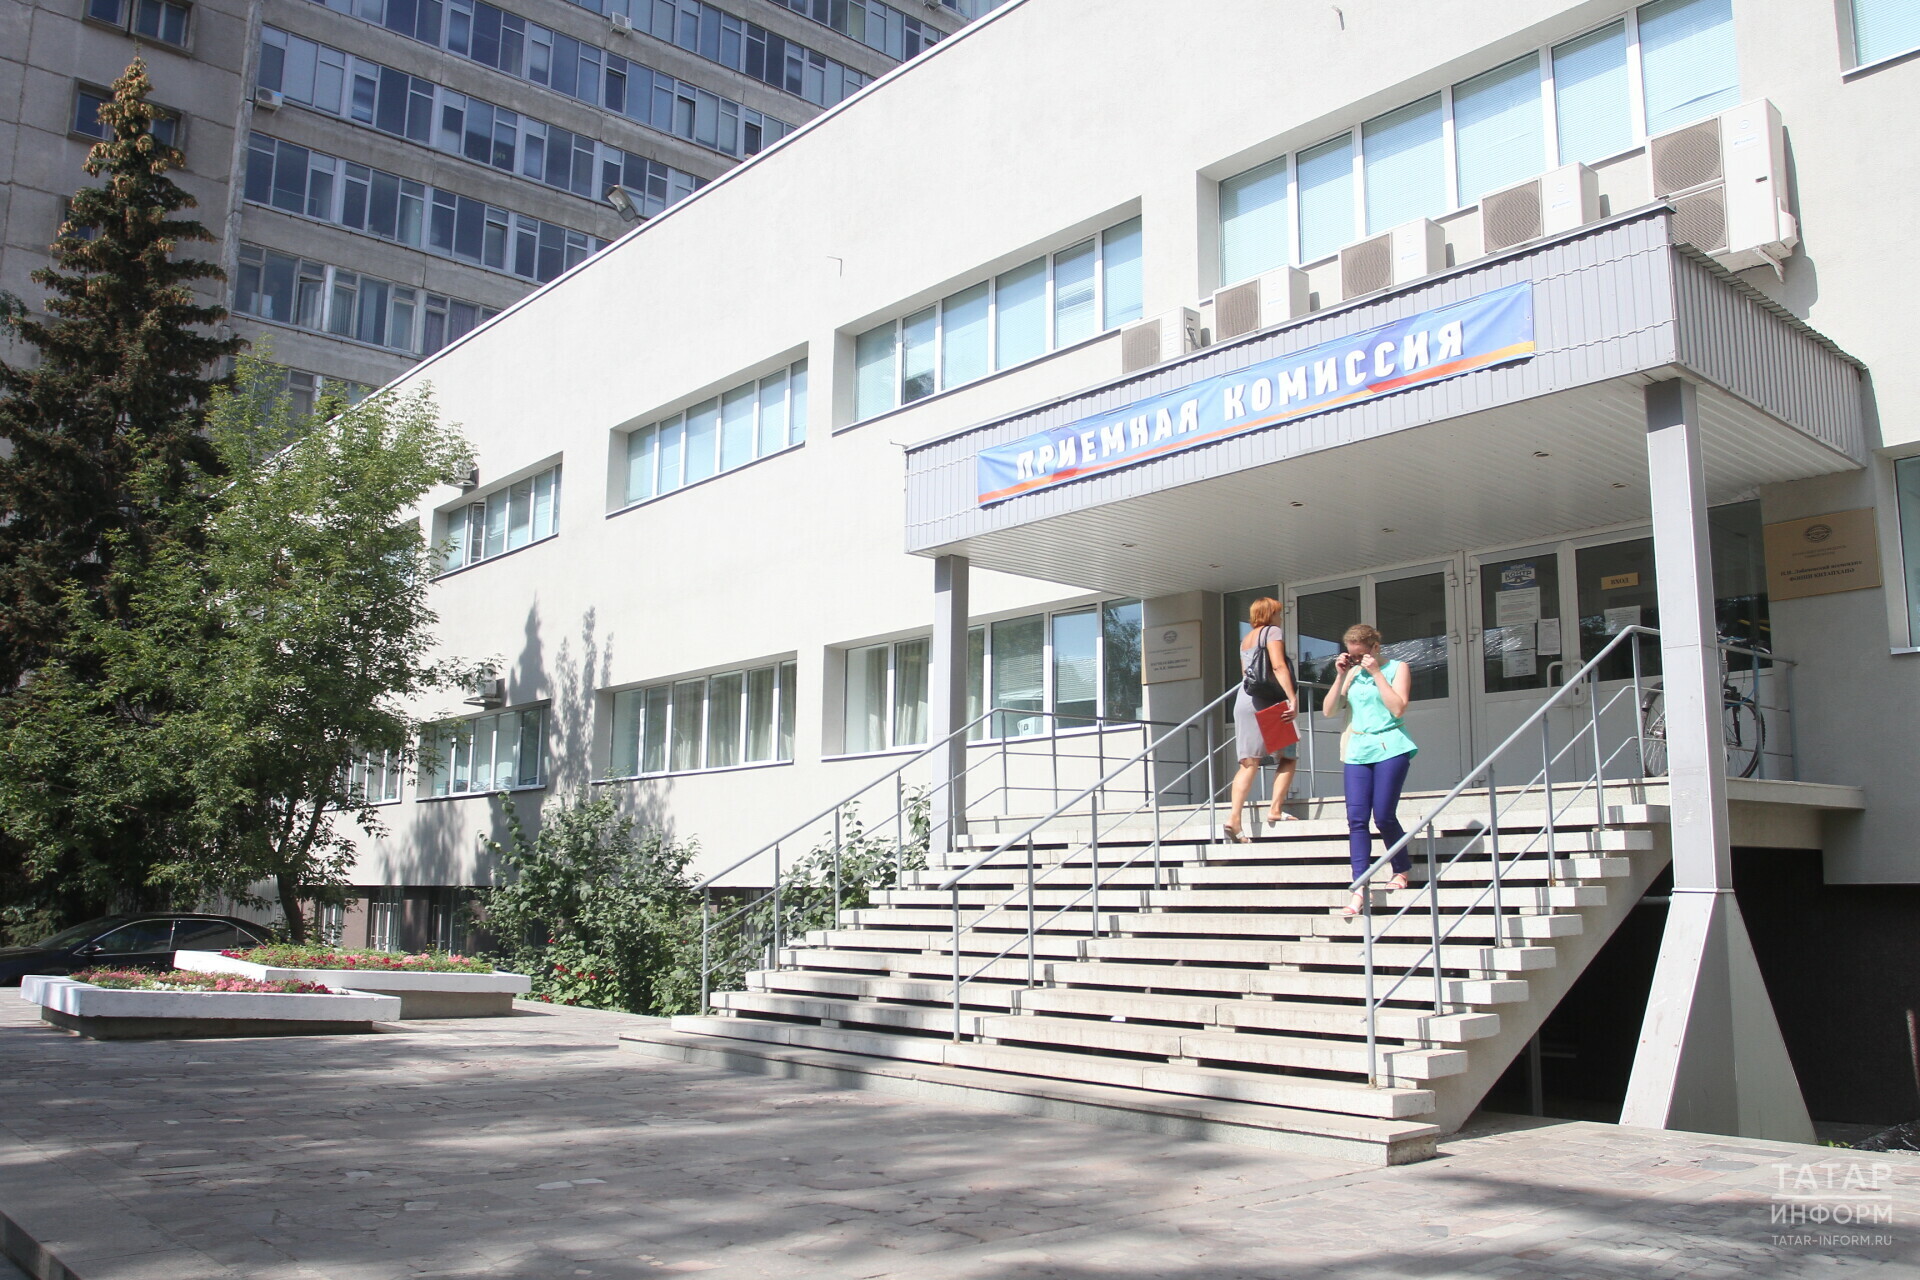 Названа средняя стоимость обучения в вузах Татарстана